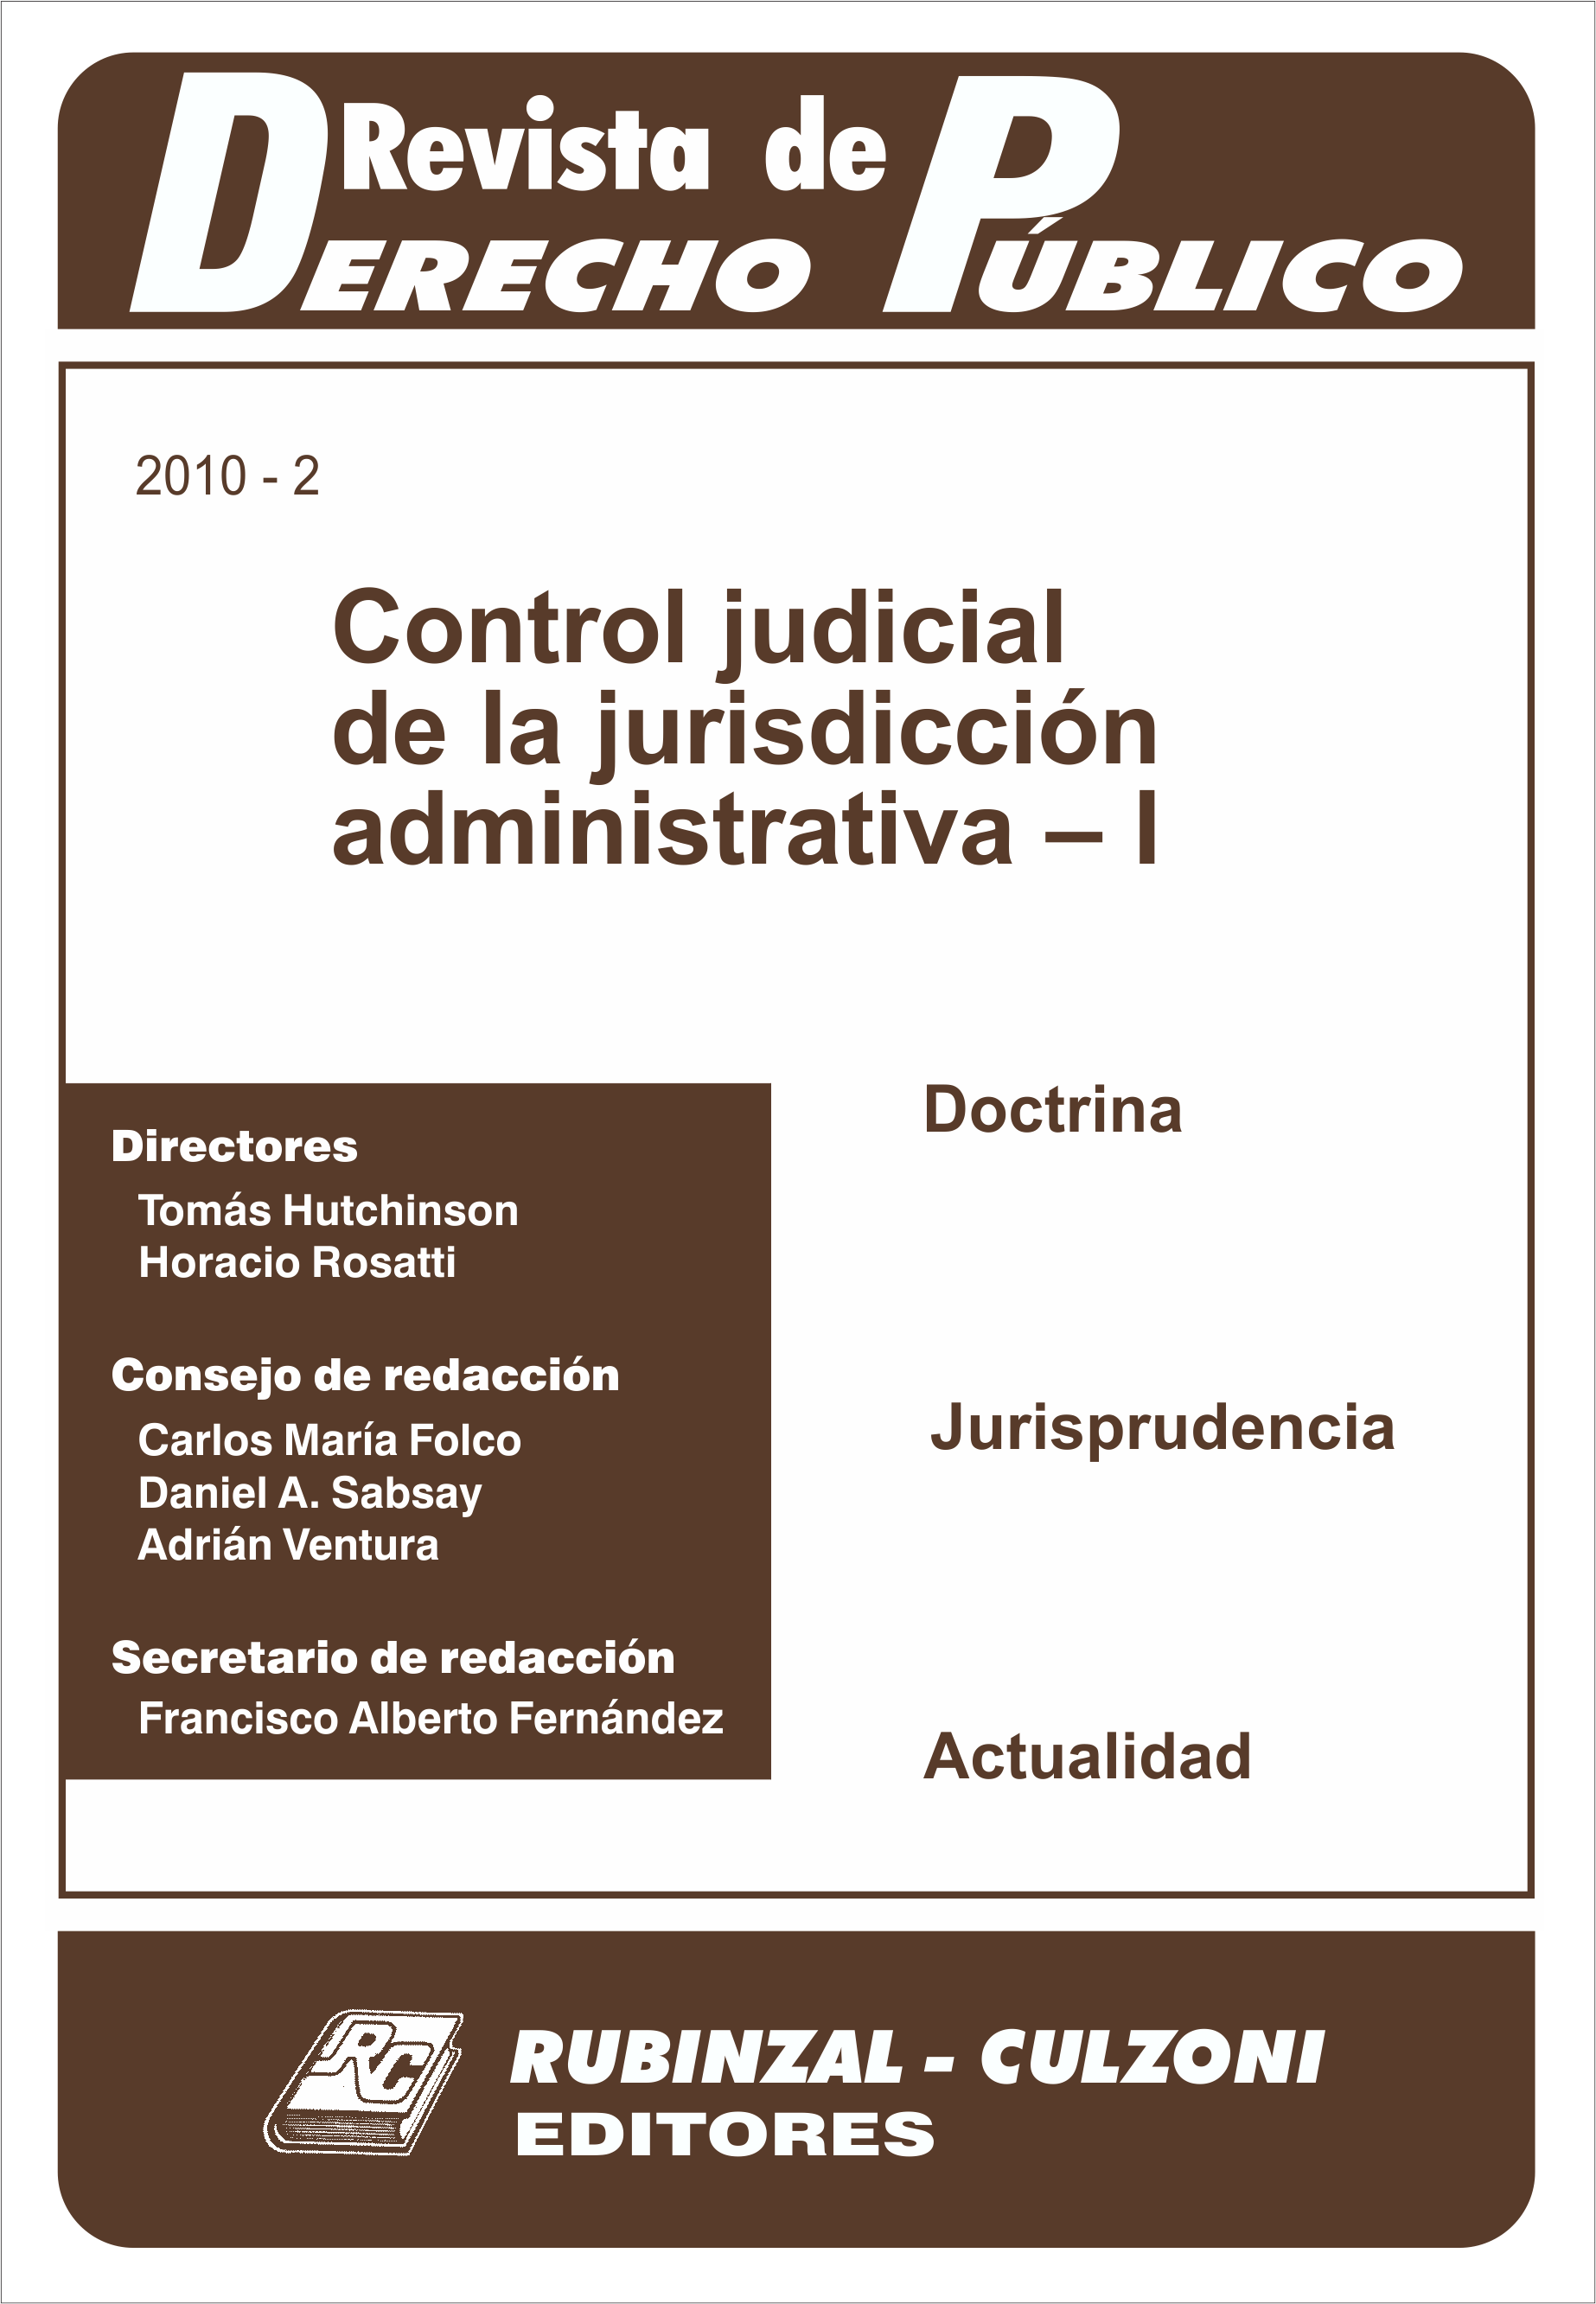 Revista de Derecho Público - Control judicial de la jurisdicción administrativa - I.